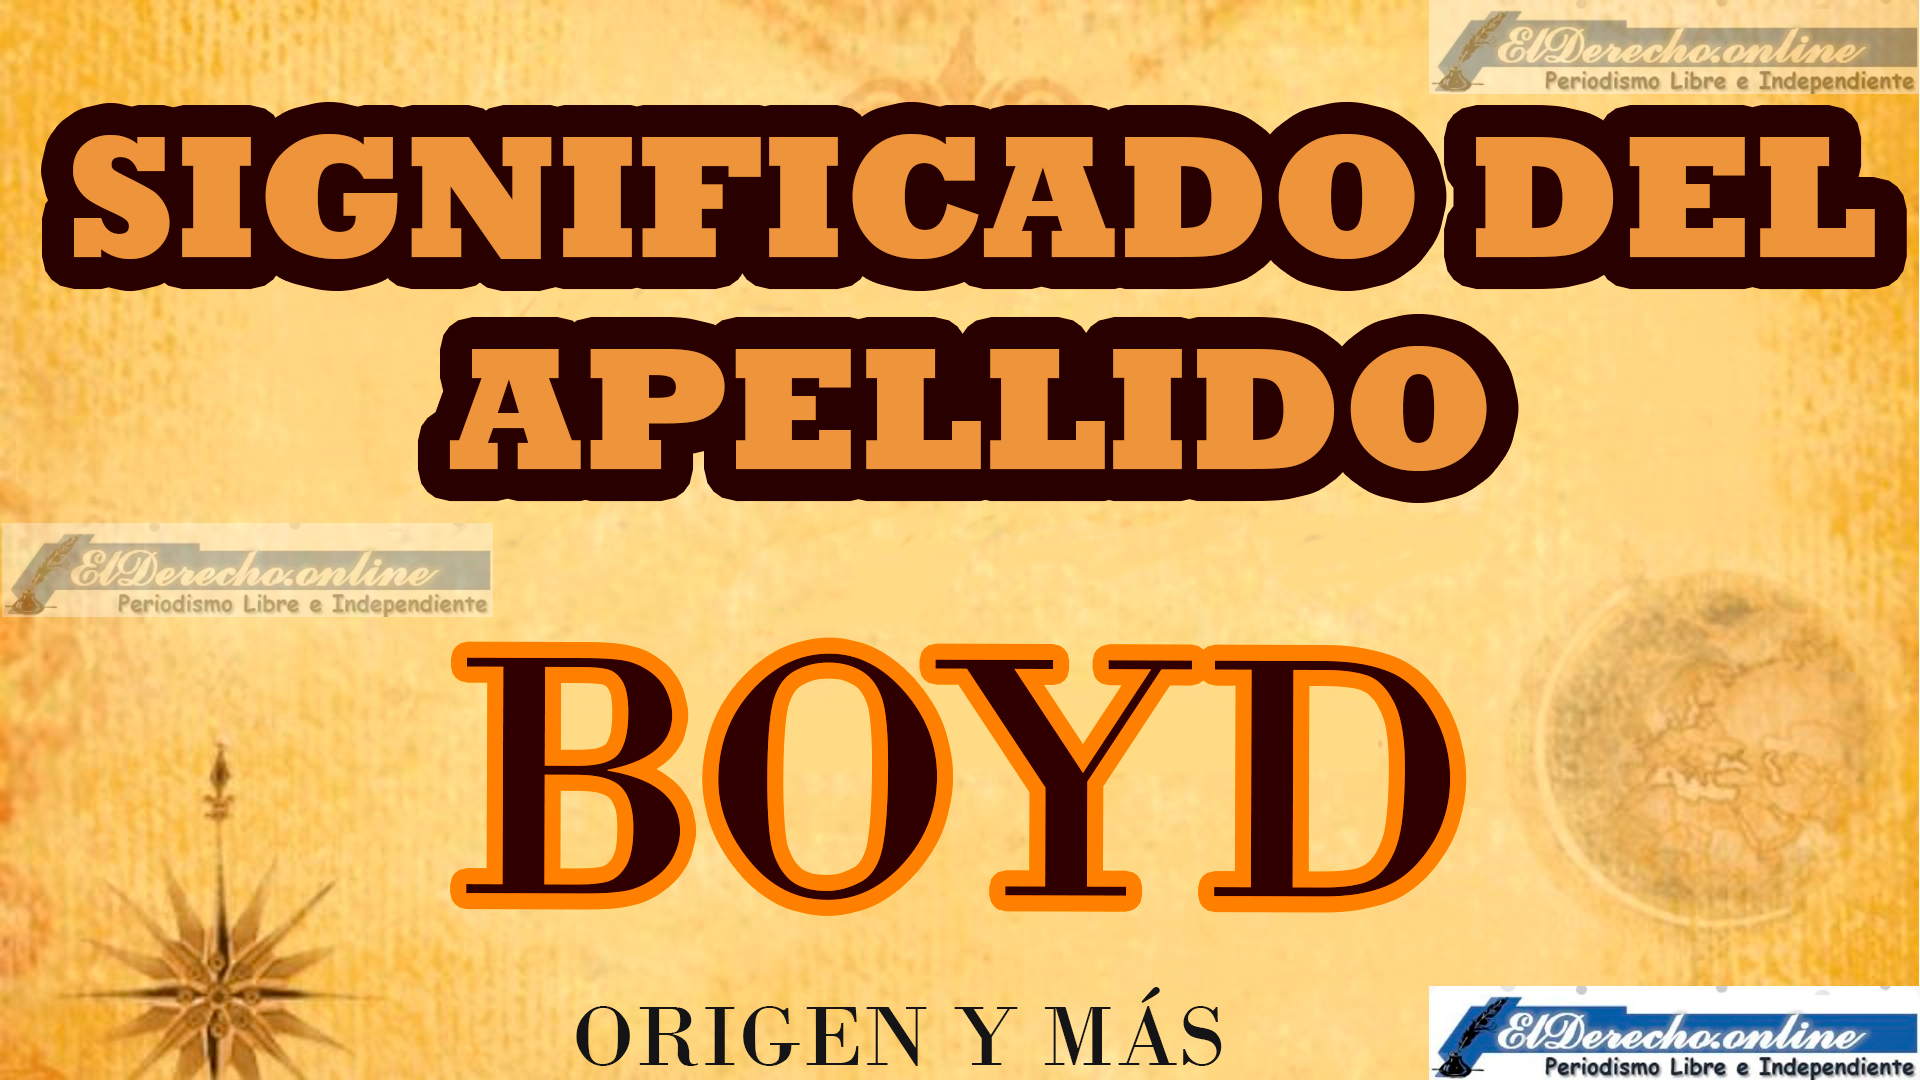 Significado del apellido Boyd, Origen y más